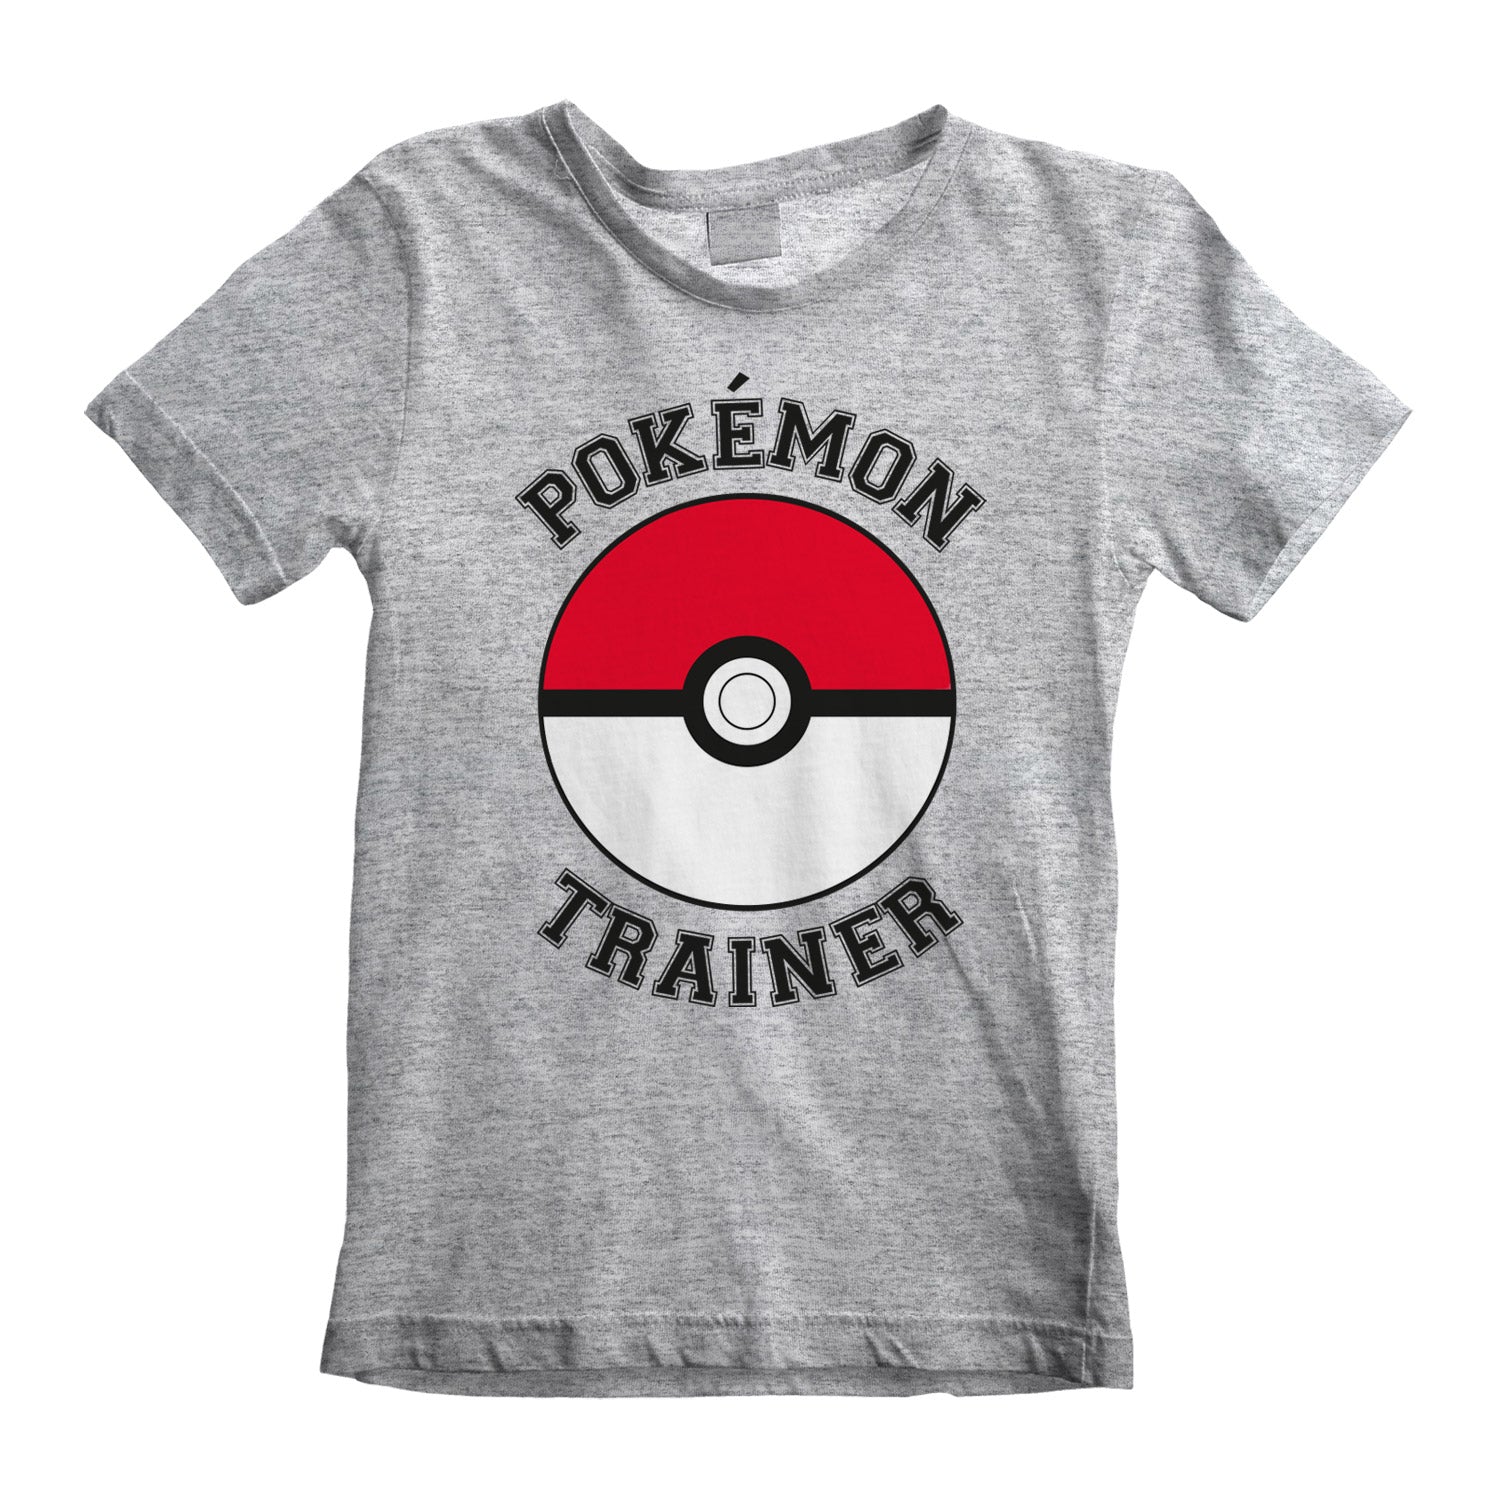 Nintendo - T-shirt Enfant Gris chiné Pokémon Entraîneur - 5-6 ans